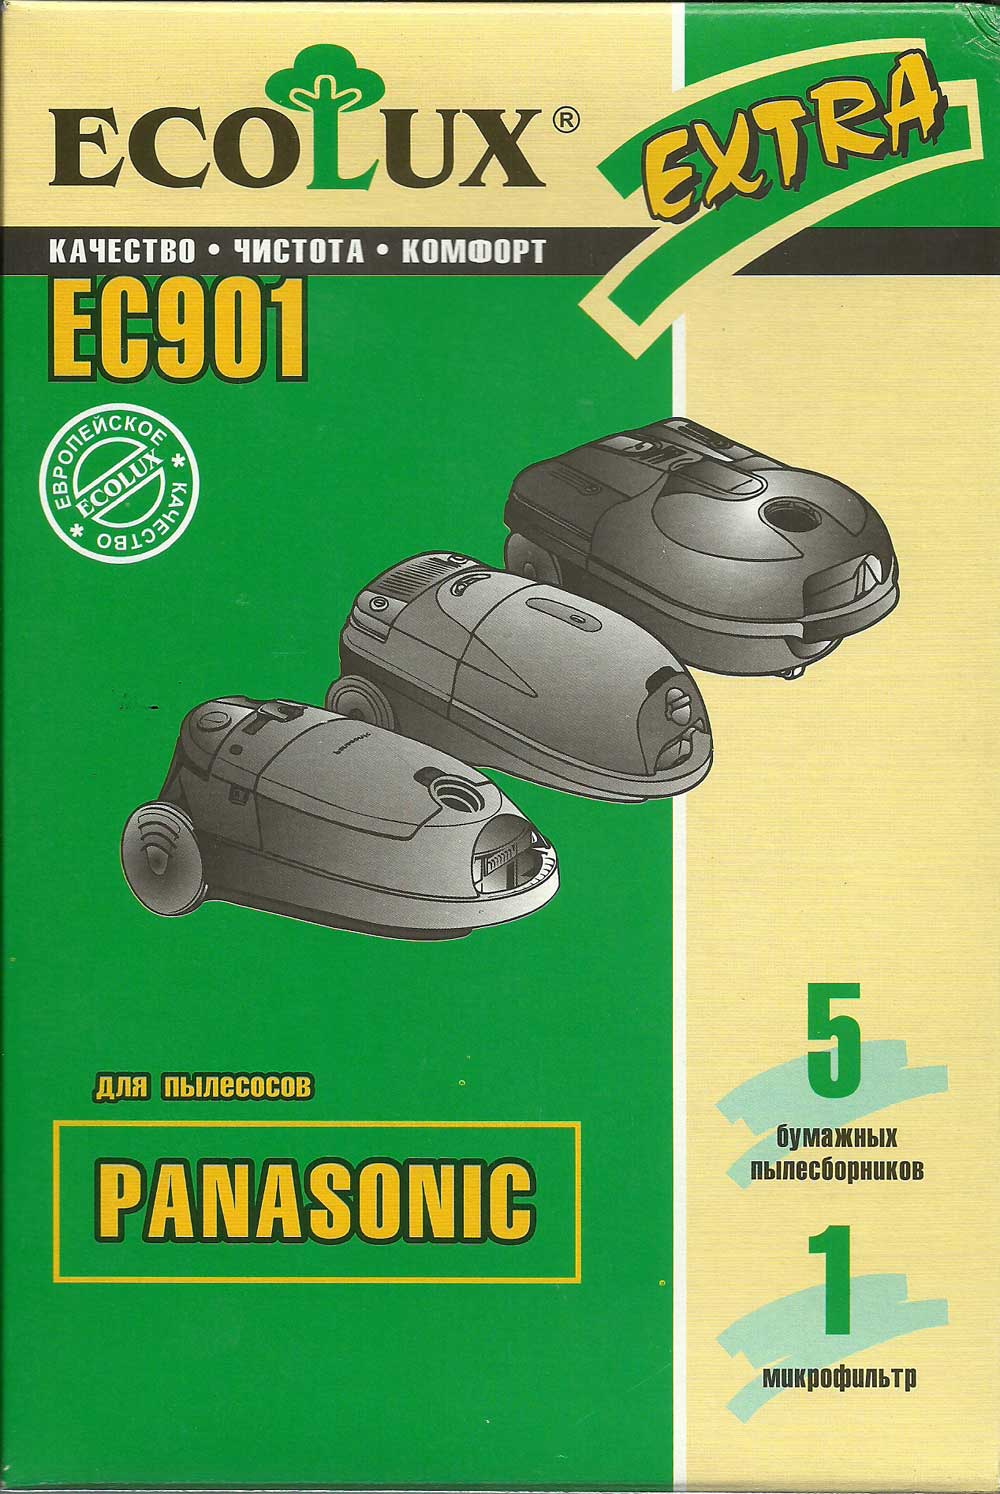 Мешки / пылесборники / пакеты к пылесосам Panasonic / EcoLux EC-901 / EC901 фото